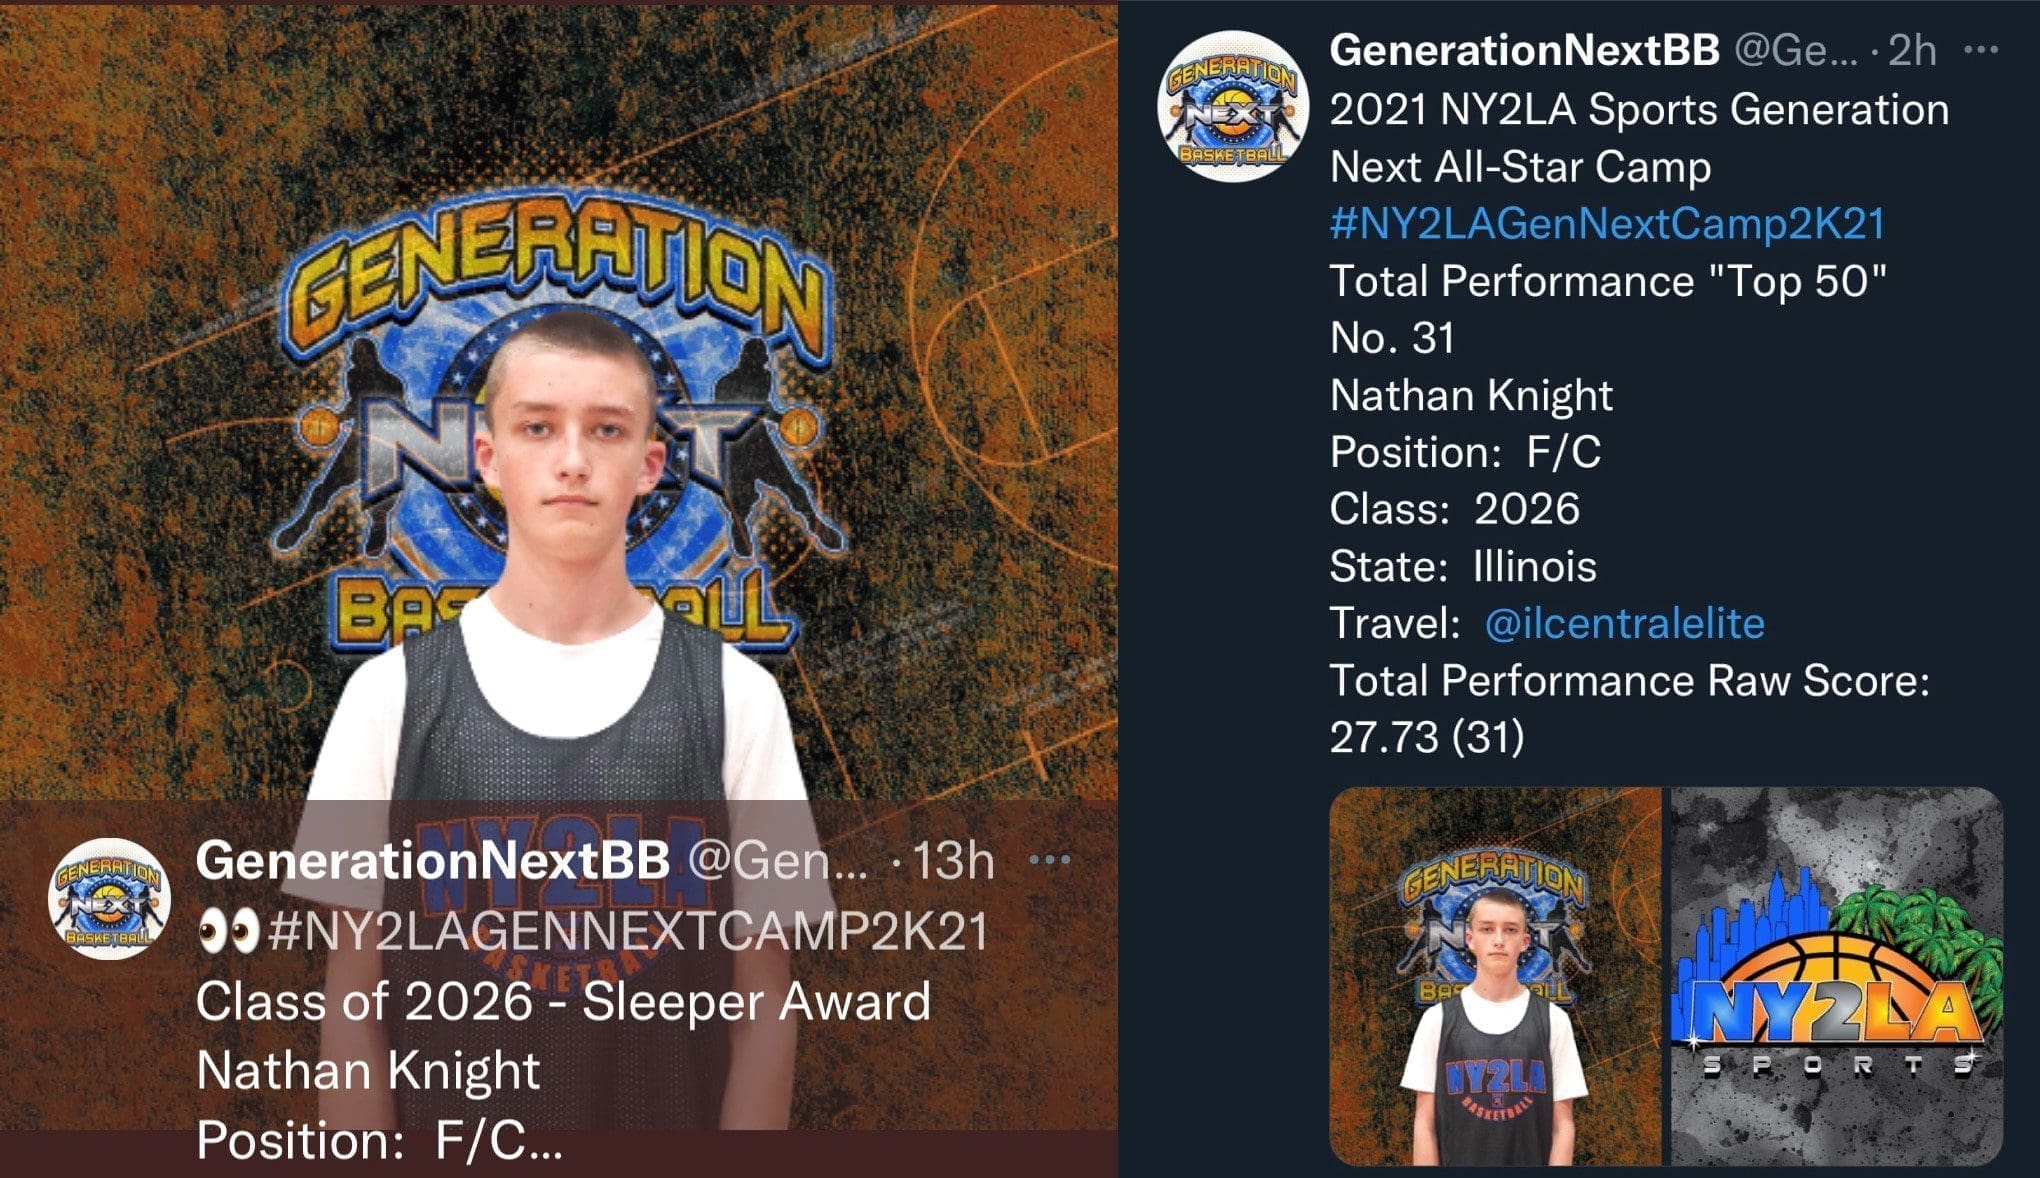 NY2LA Generation Next All-Star Camp